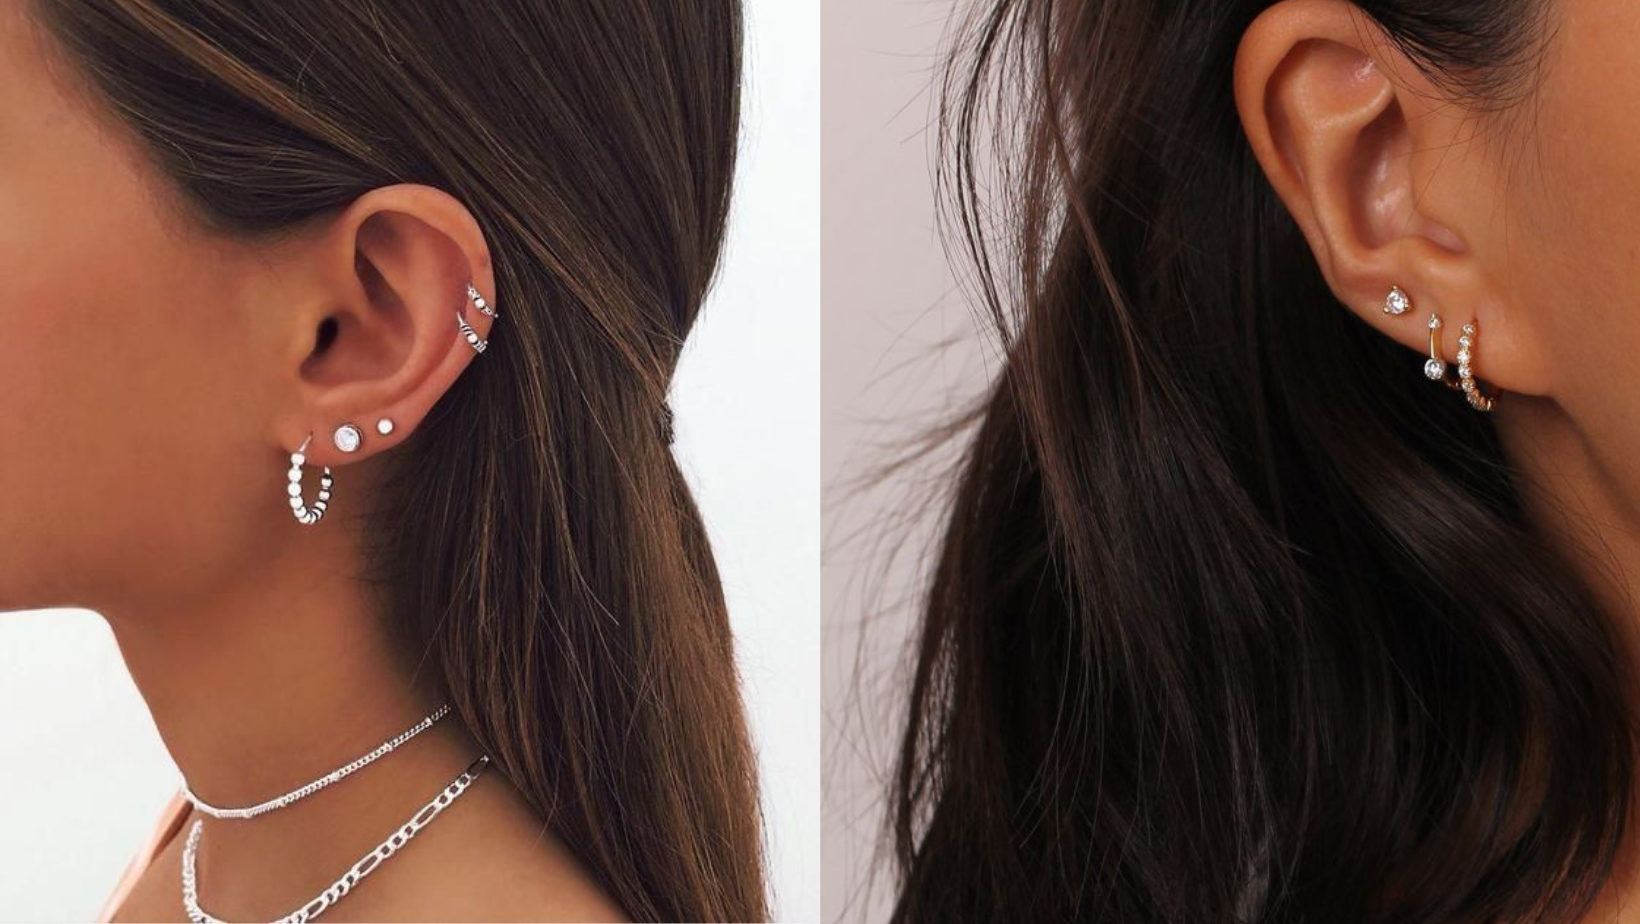 Crafting Silver Earrings: Silver Stud Earrings vs. Silver Hoops